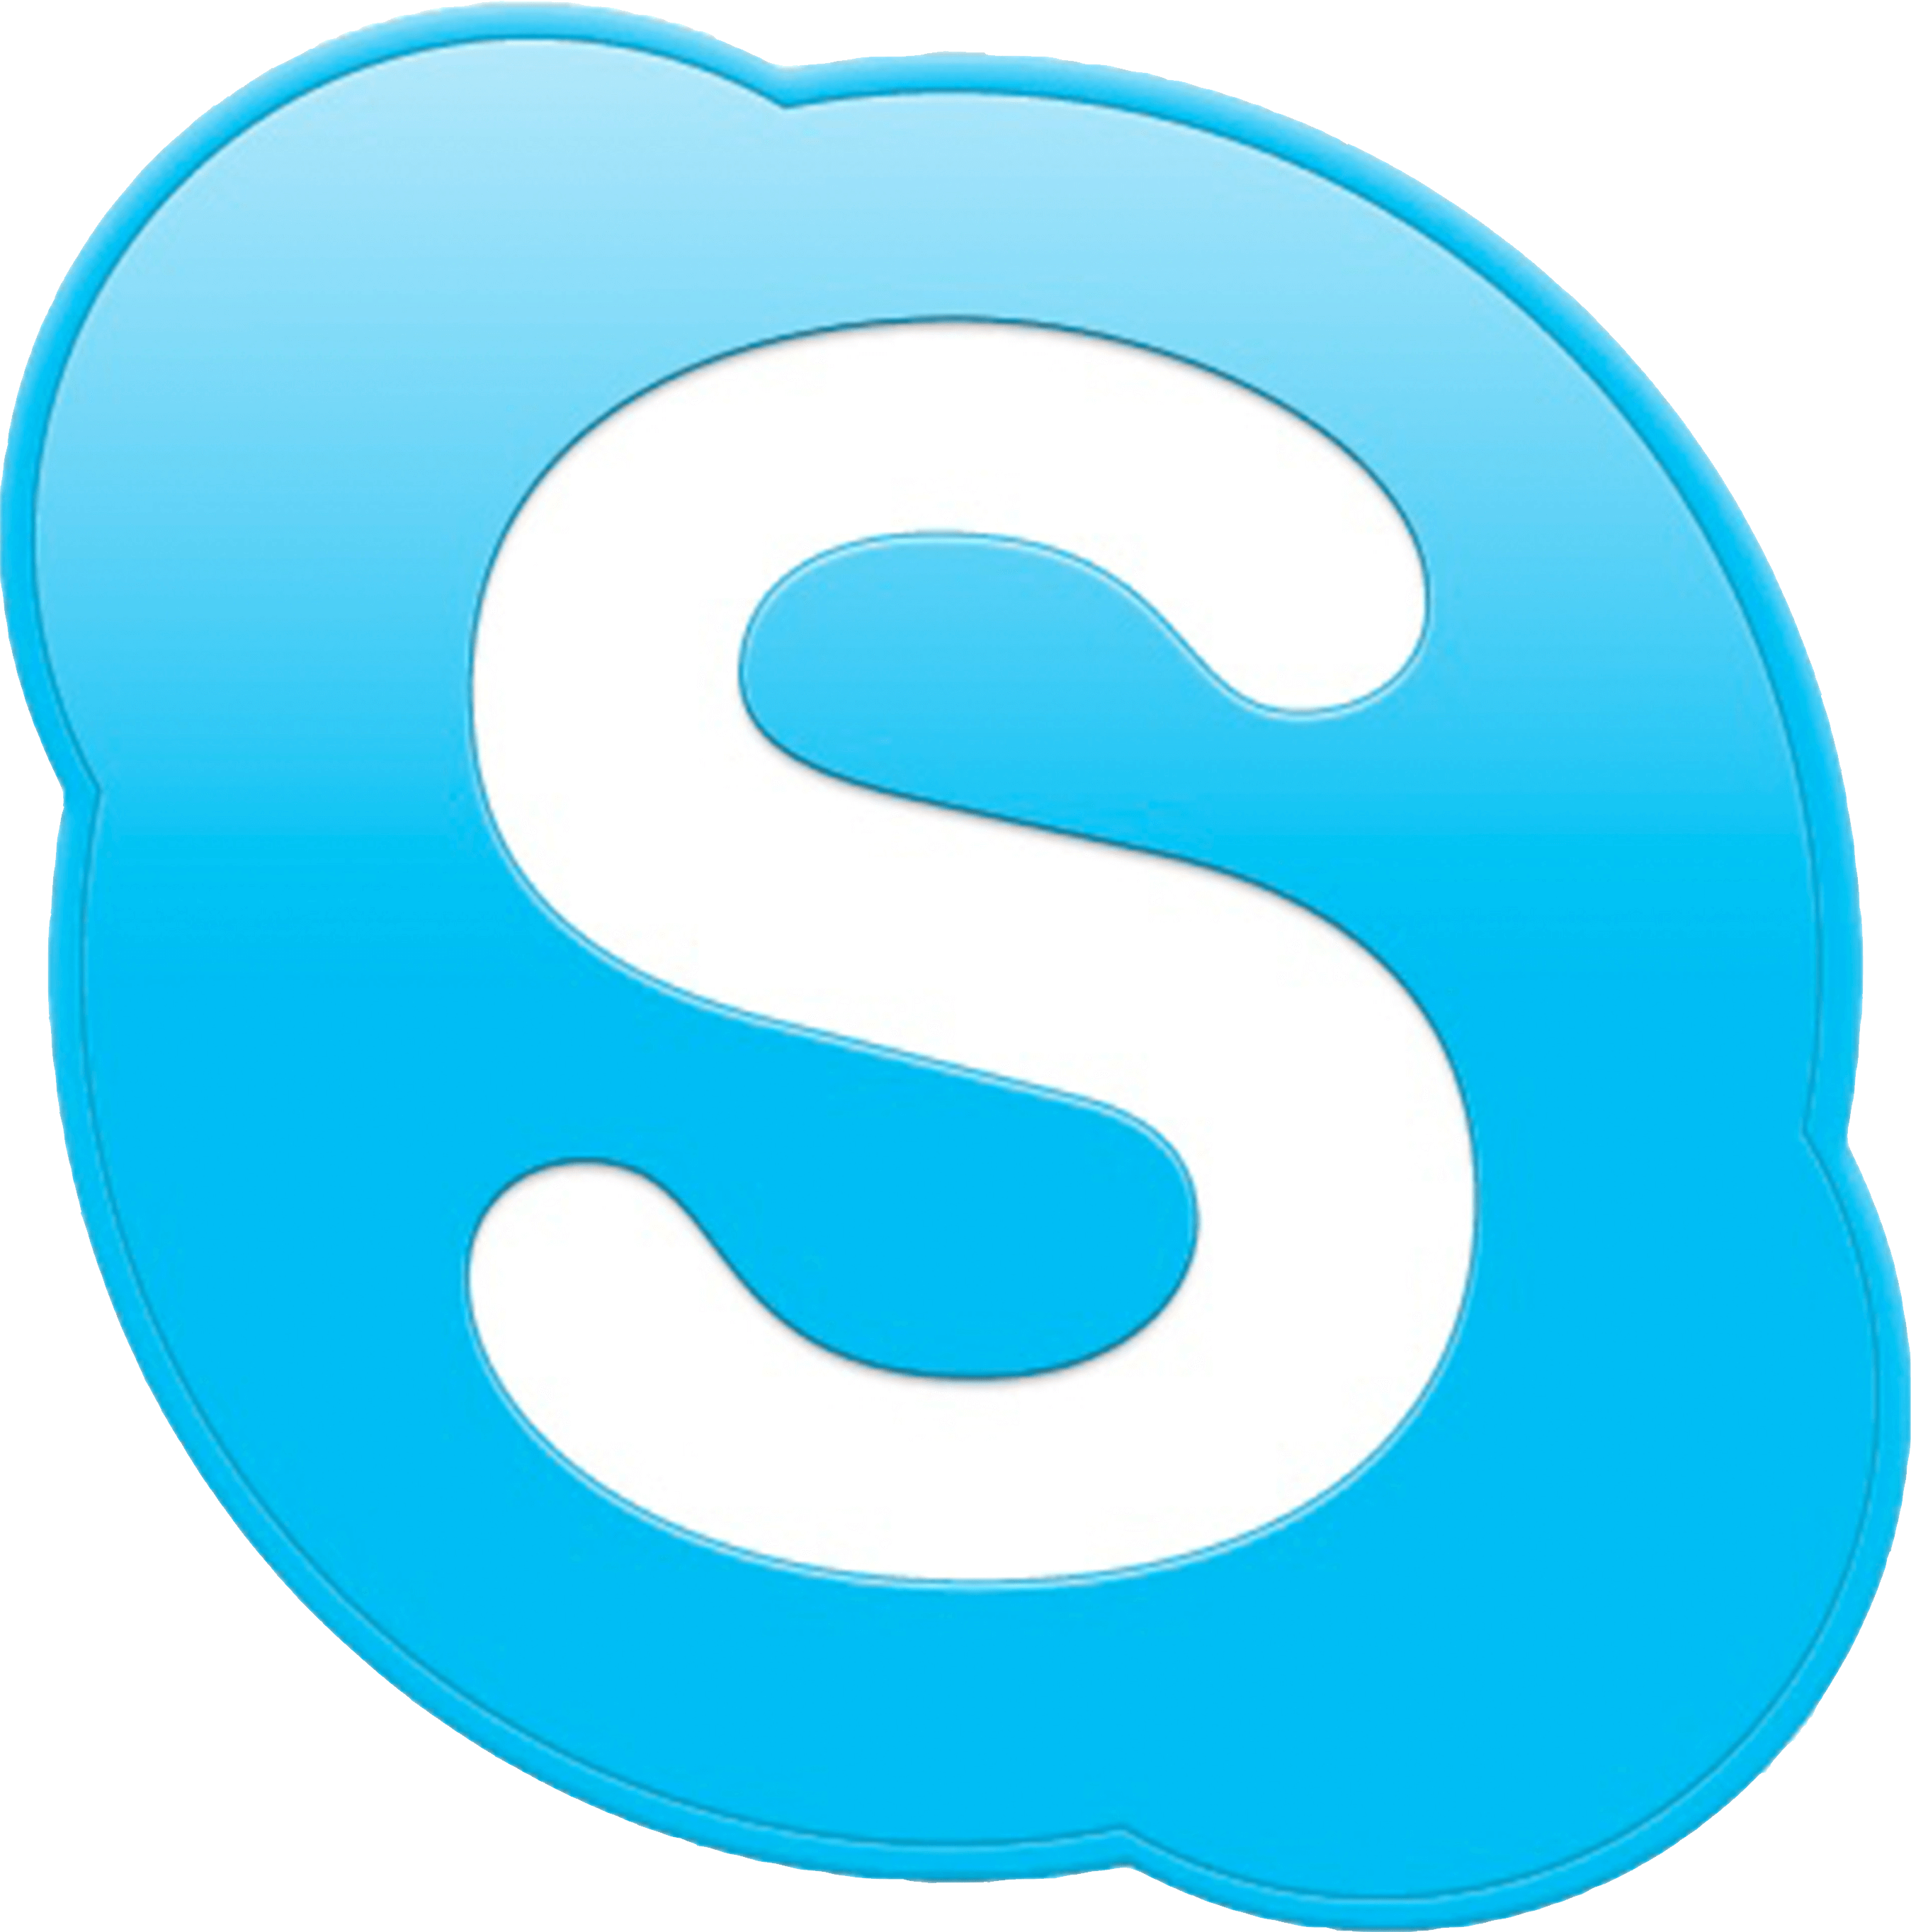 когда-то Skype был одной из программ для windows 10, которую устанавливал каждый